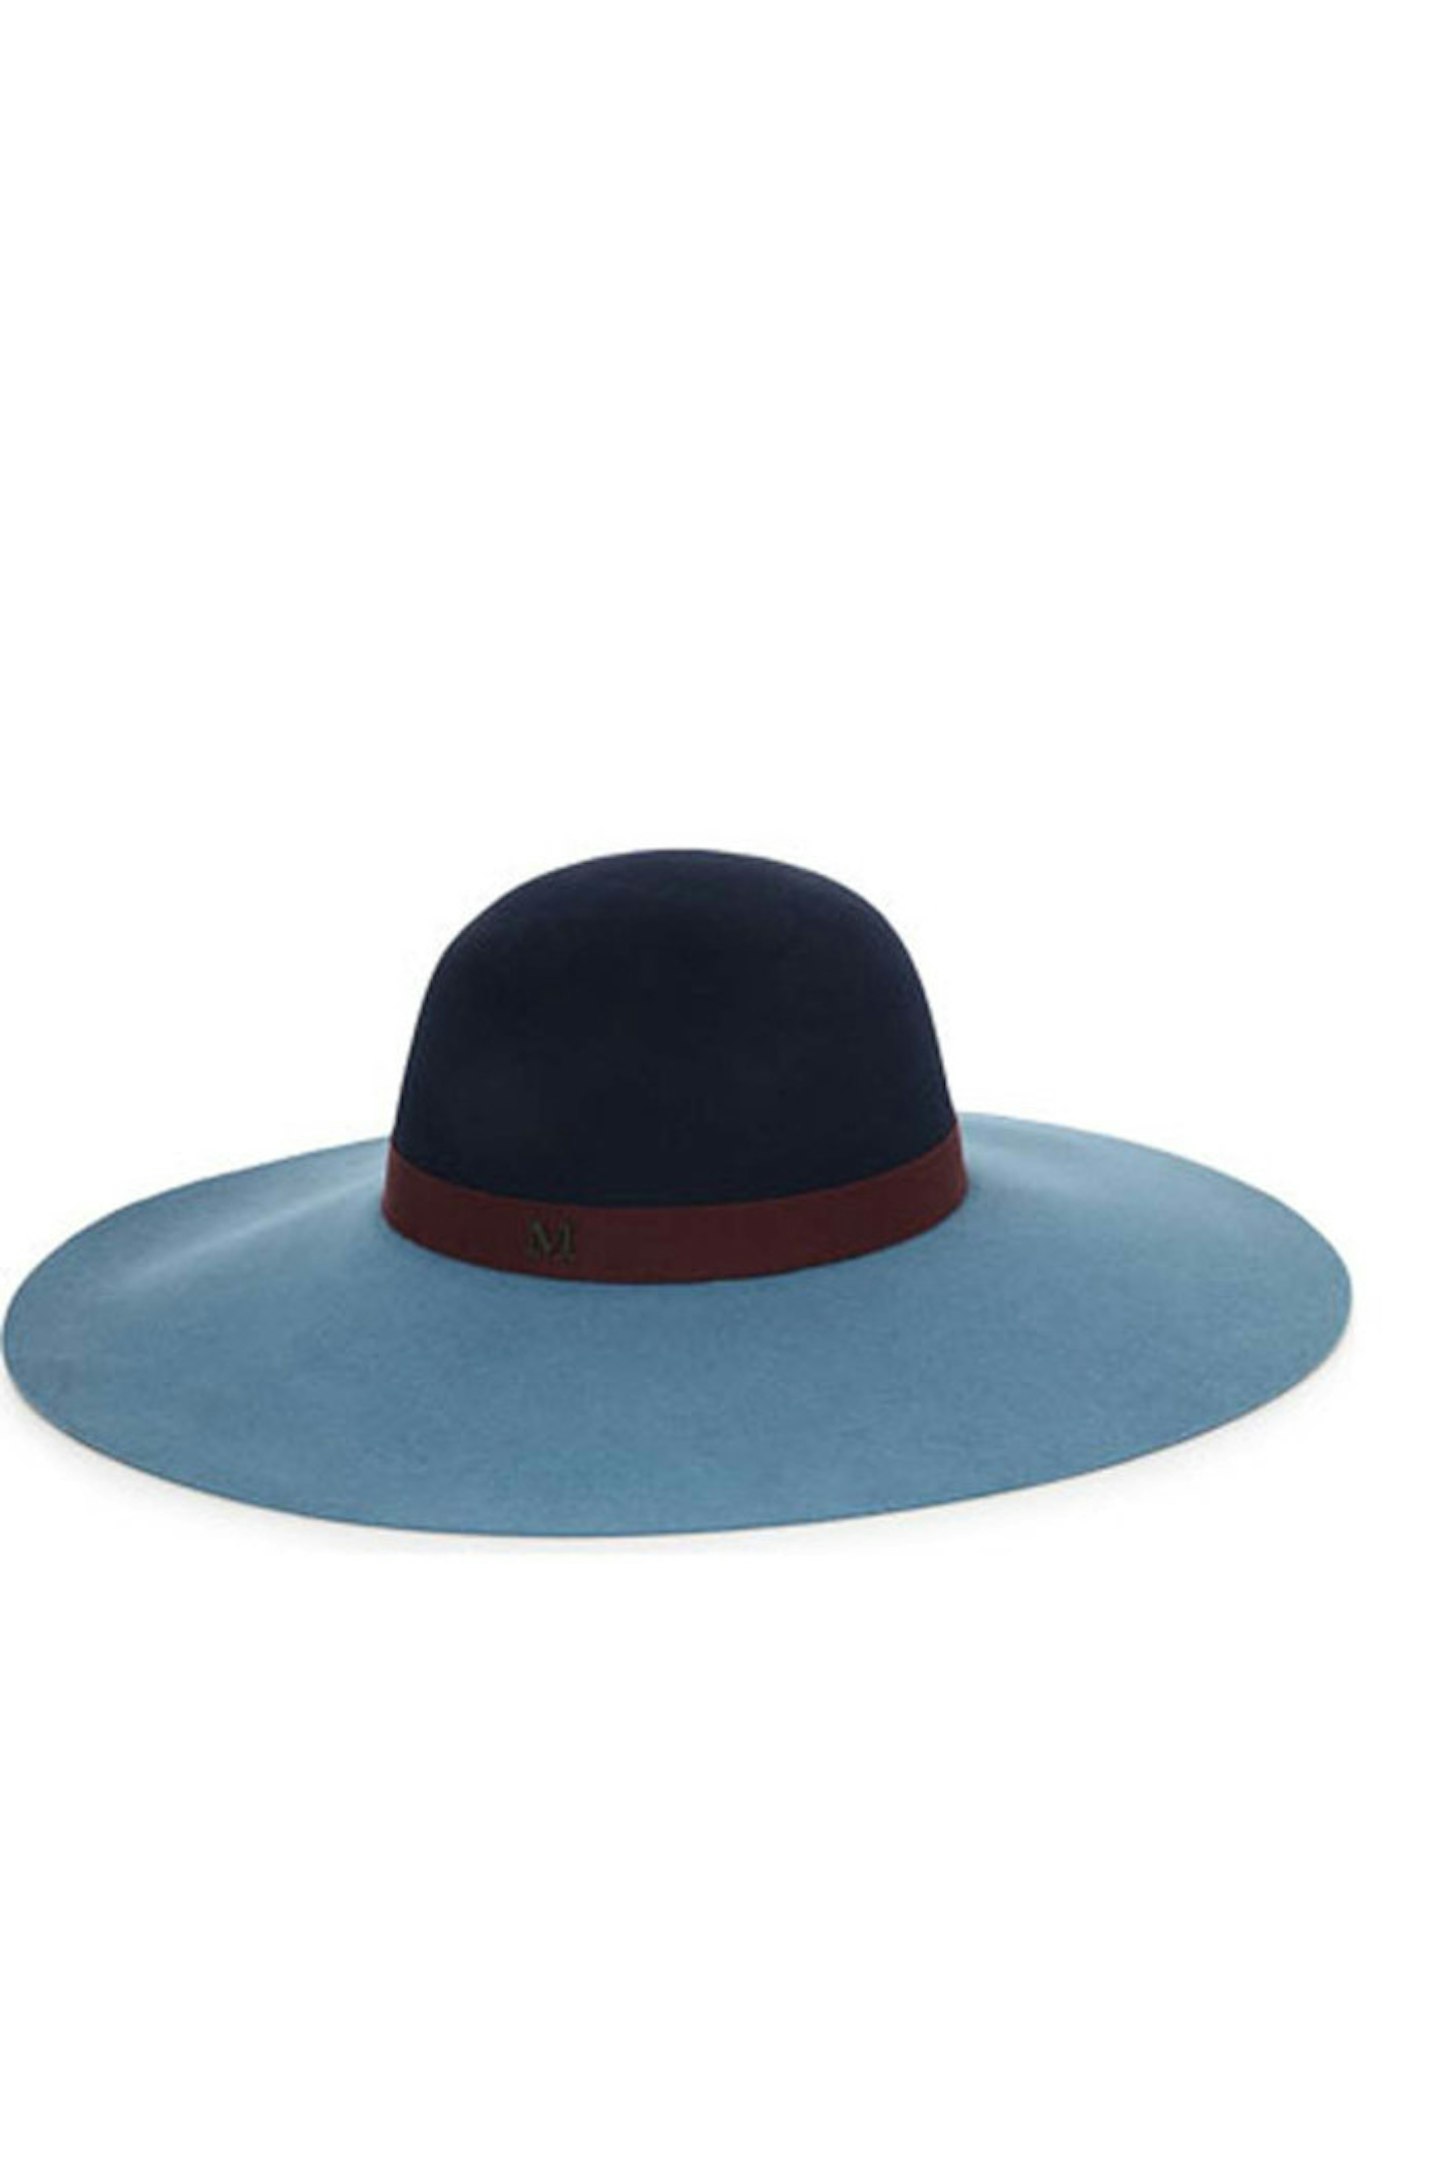 Hat, £505, Maison Michel at Selfridges